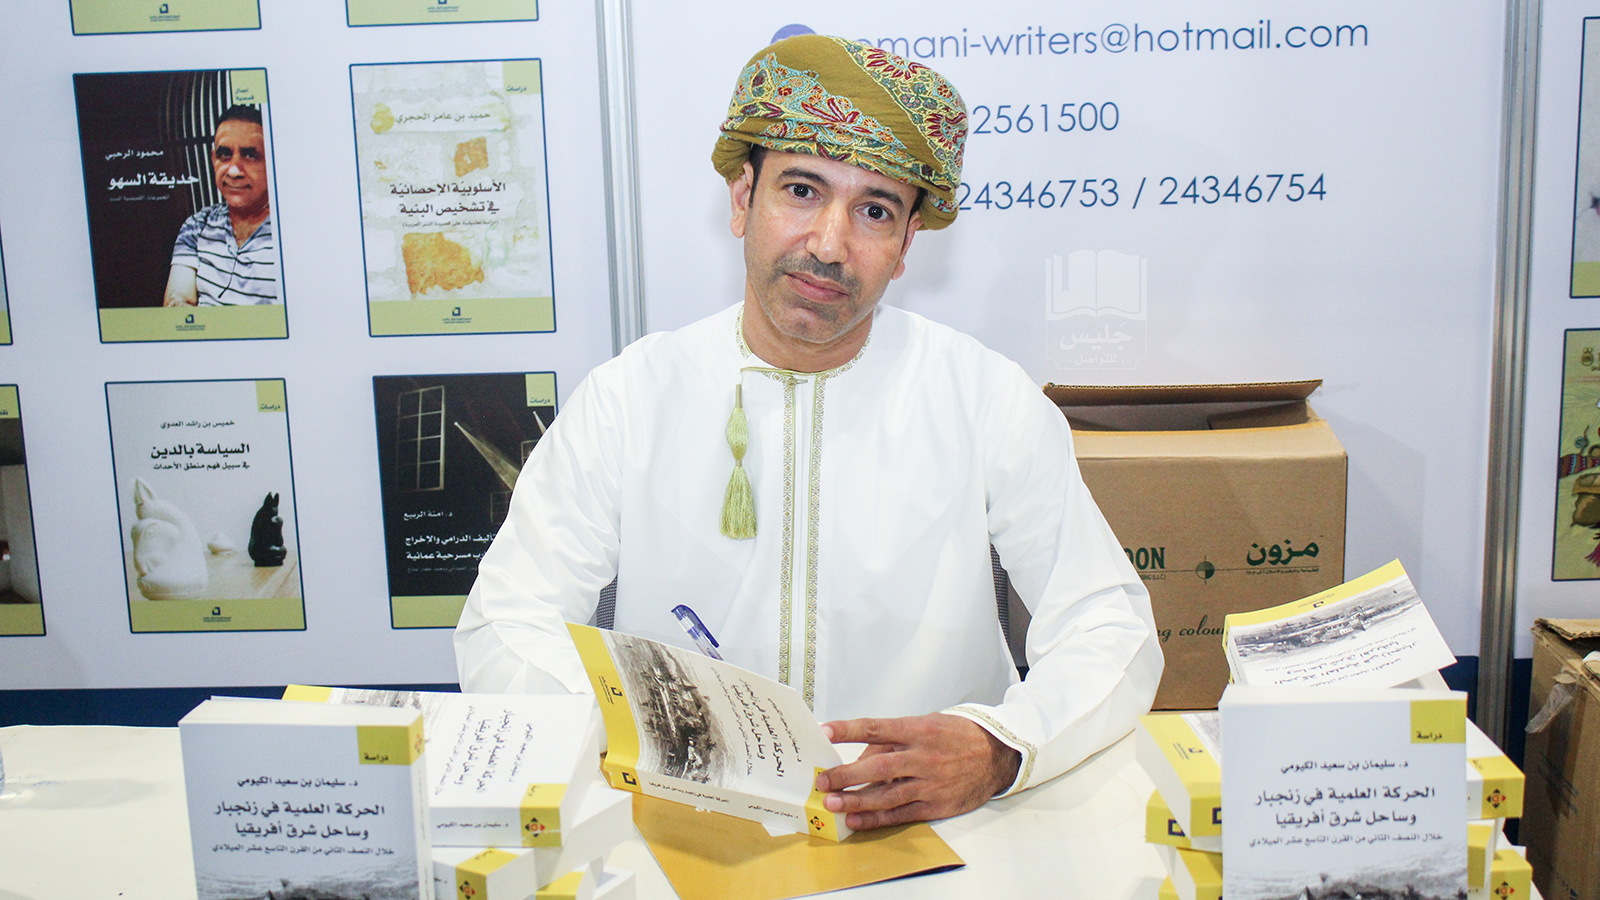 ‪الباحث الدكتور سليمان الكيومي يوقع على إصداره بمعرض مسقط للكتاب‬ (الجزيرة)